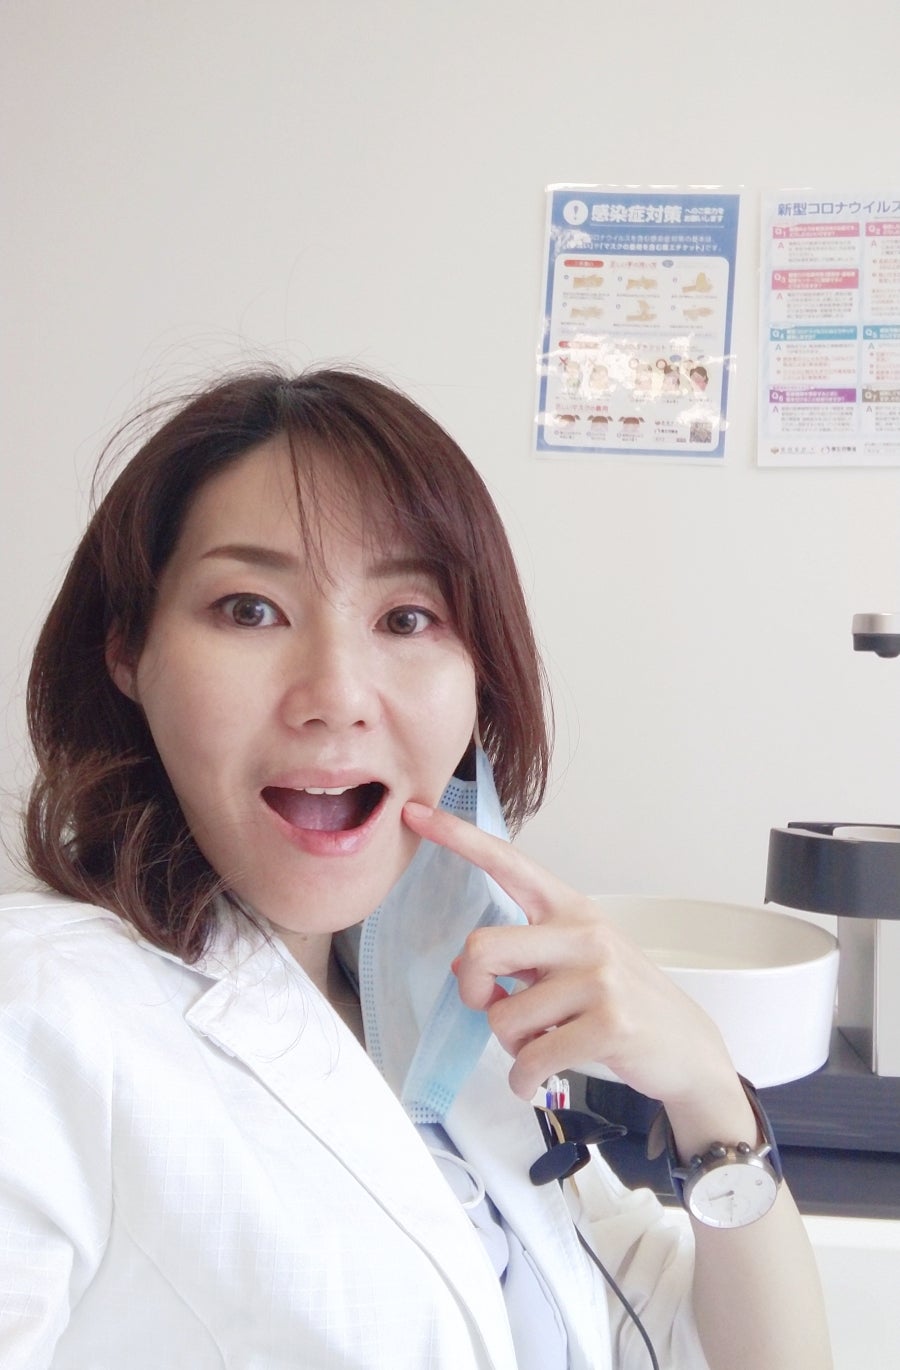 ネフェルティテイリフトボトックスって何 大阪 美容皮膚科医 黒田淳子のブログ